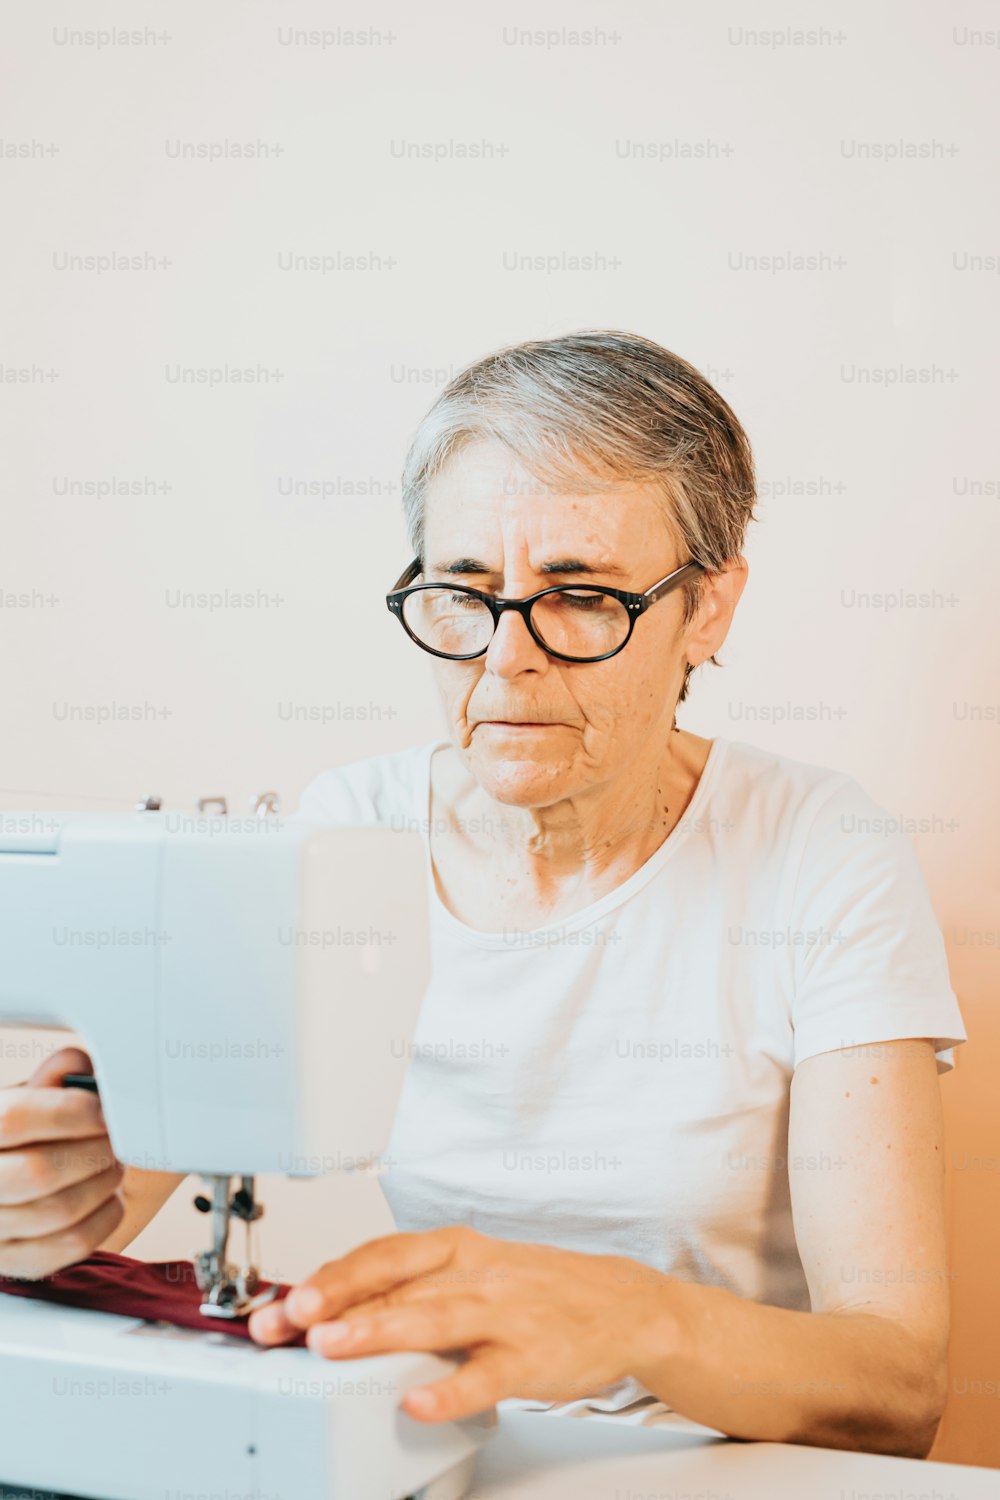 Una donna anziana sta usando una macchina da cucire